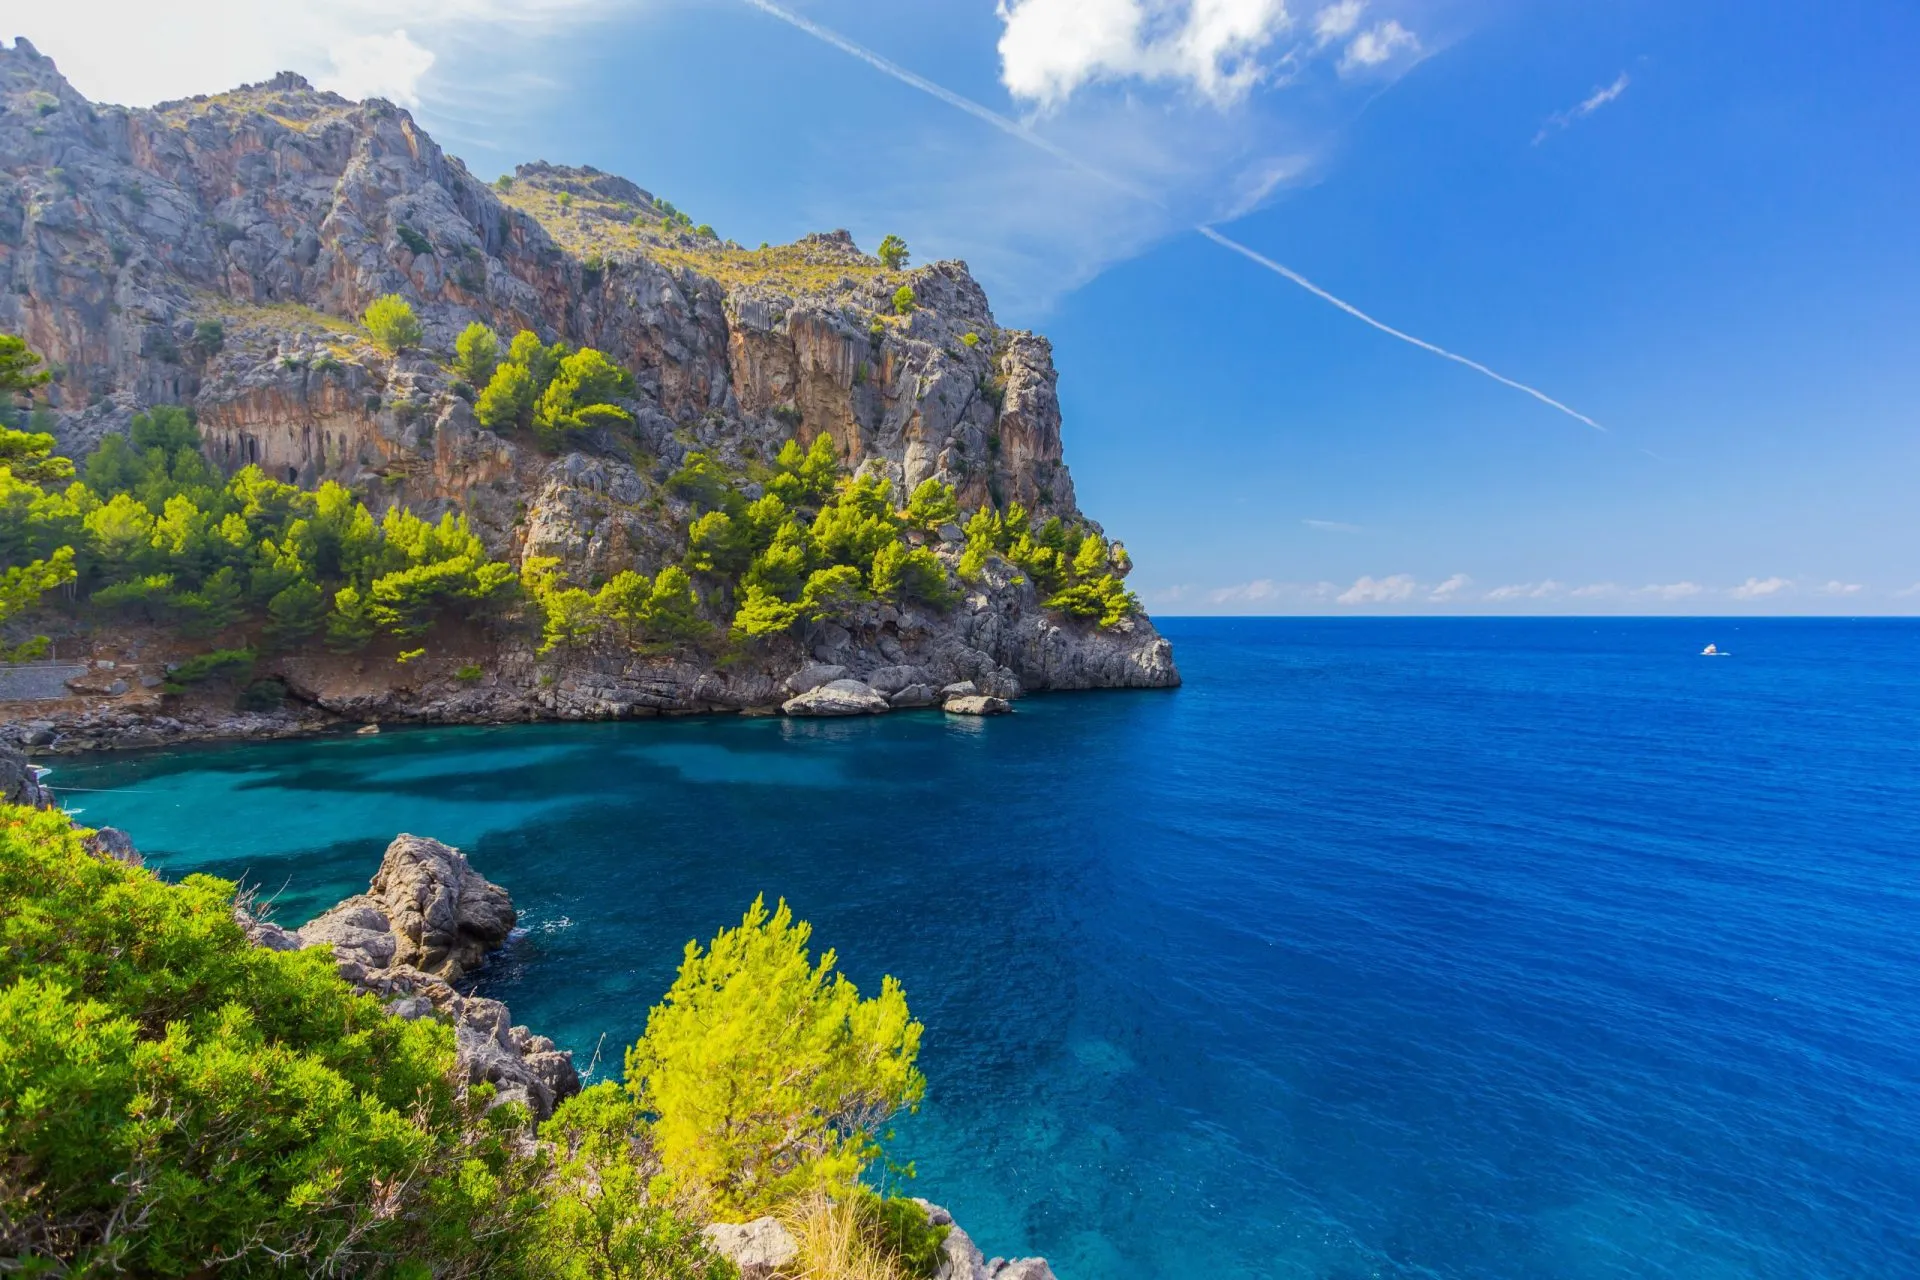 Vakker utsikt over Sa Calobra på øya Mallorca, Spania